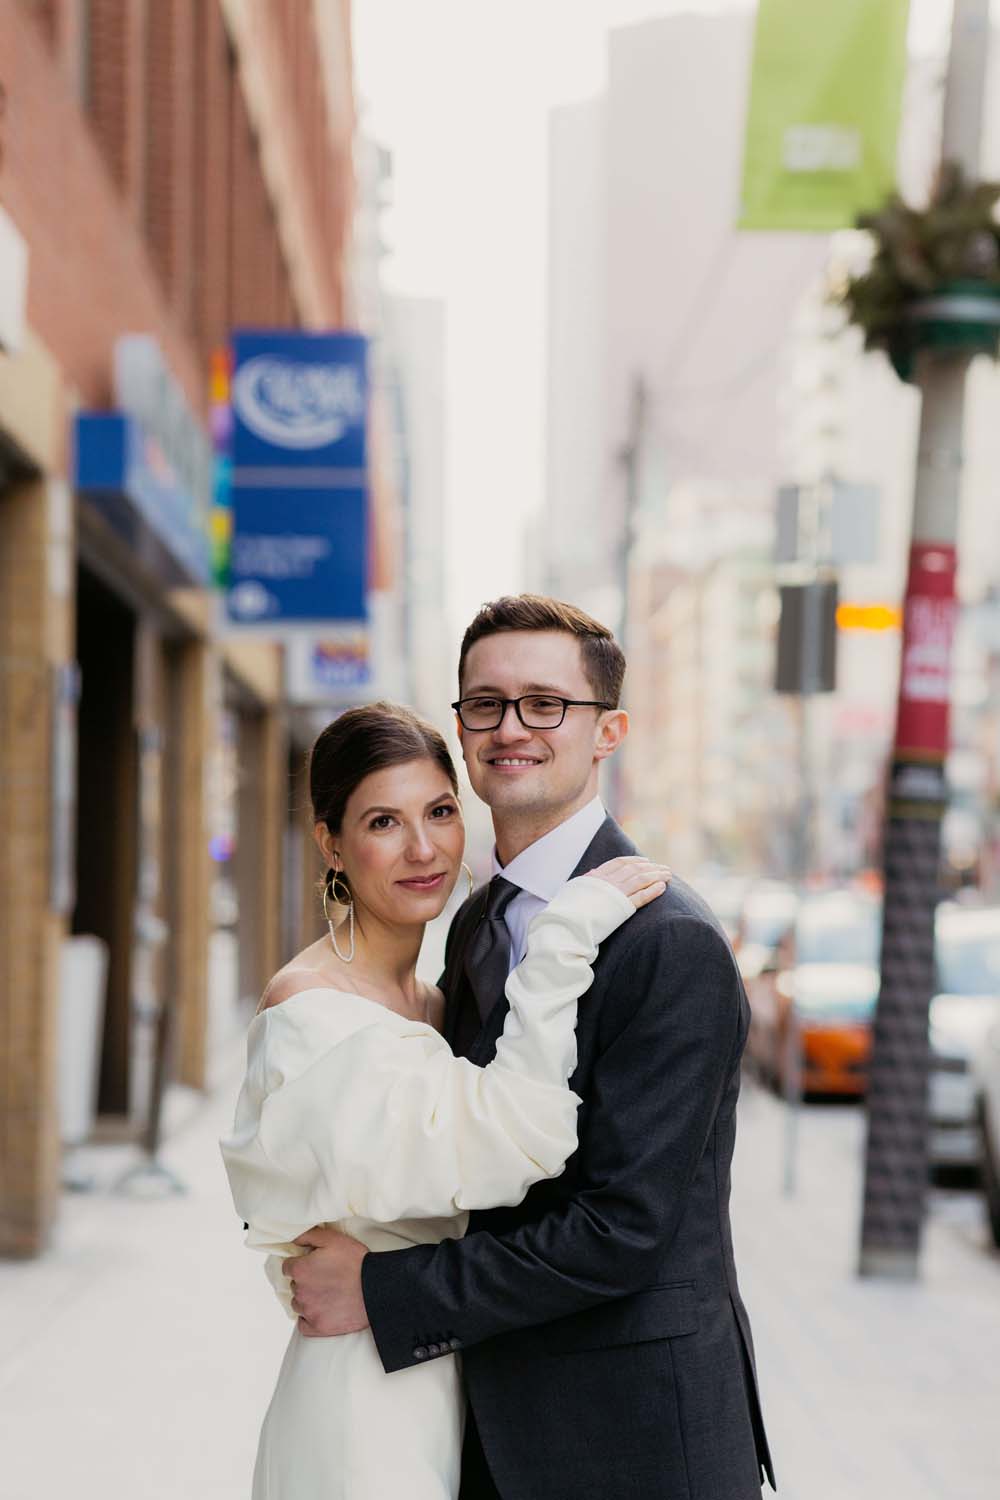 A Minimal Winter Wedding in Toronto, Ontario - Bride and Groom